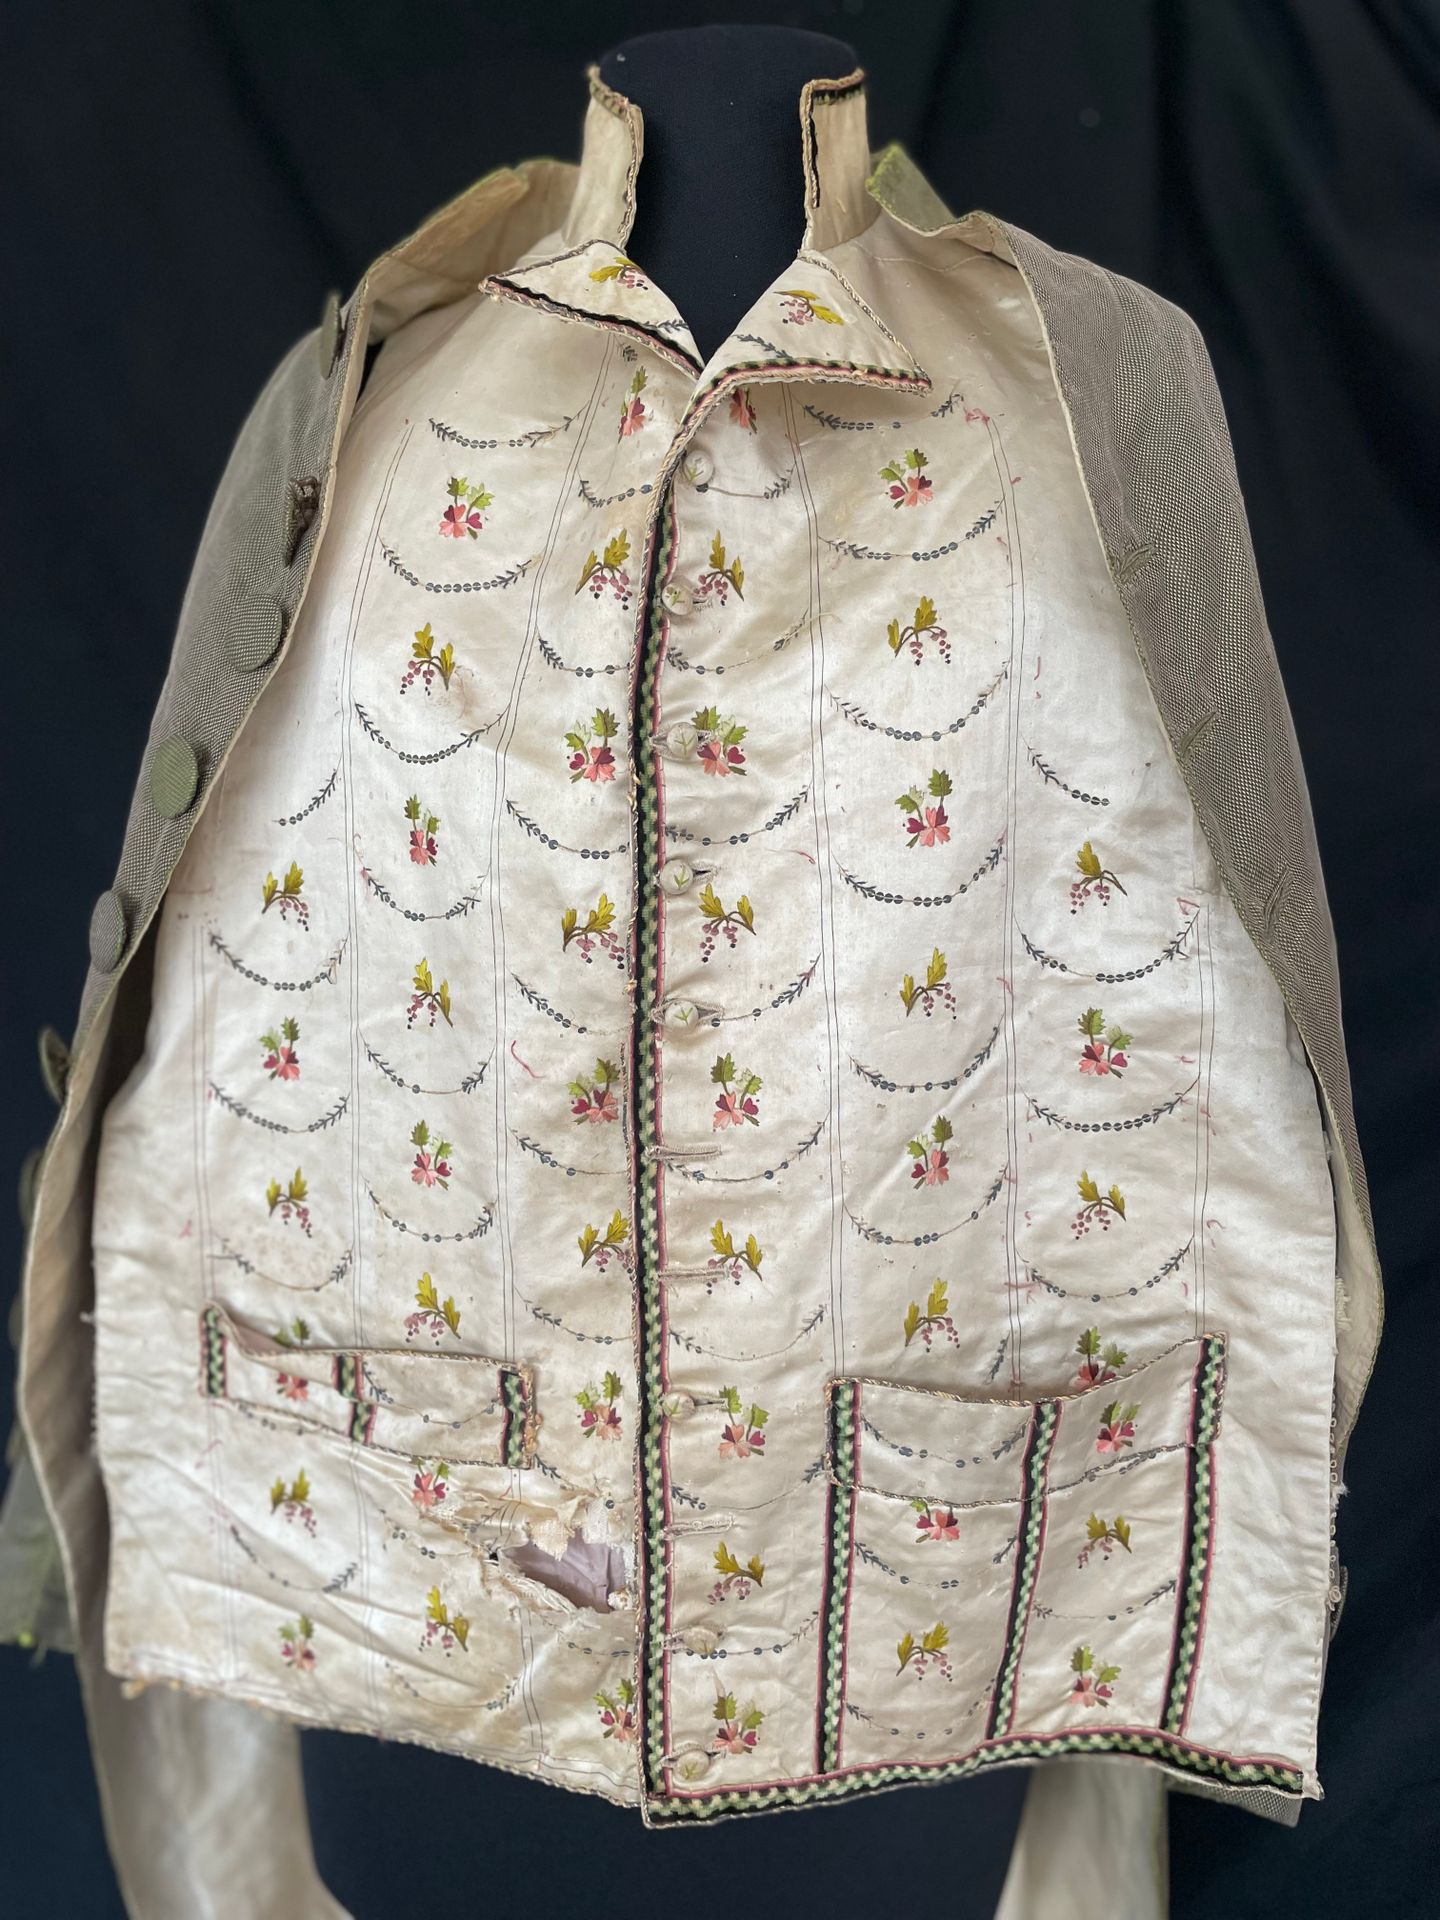 Null 短马甲正面约1785-90年，路易十六时期。
象牙色缎面上绣有丝质飞鸟和亮片拱门，（部分缺失）右侧口袋上的条纹毛绒编织，小翻领的边缘（剪裁后附）。